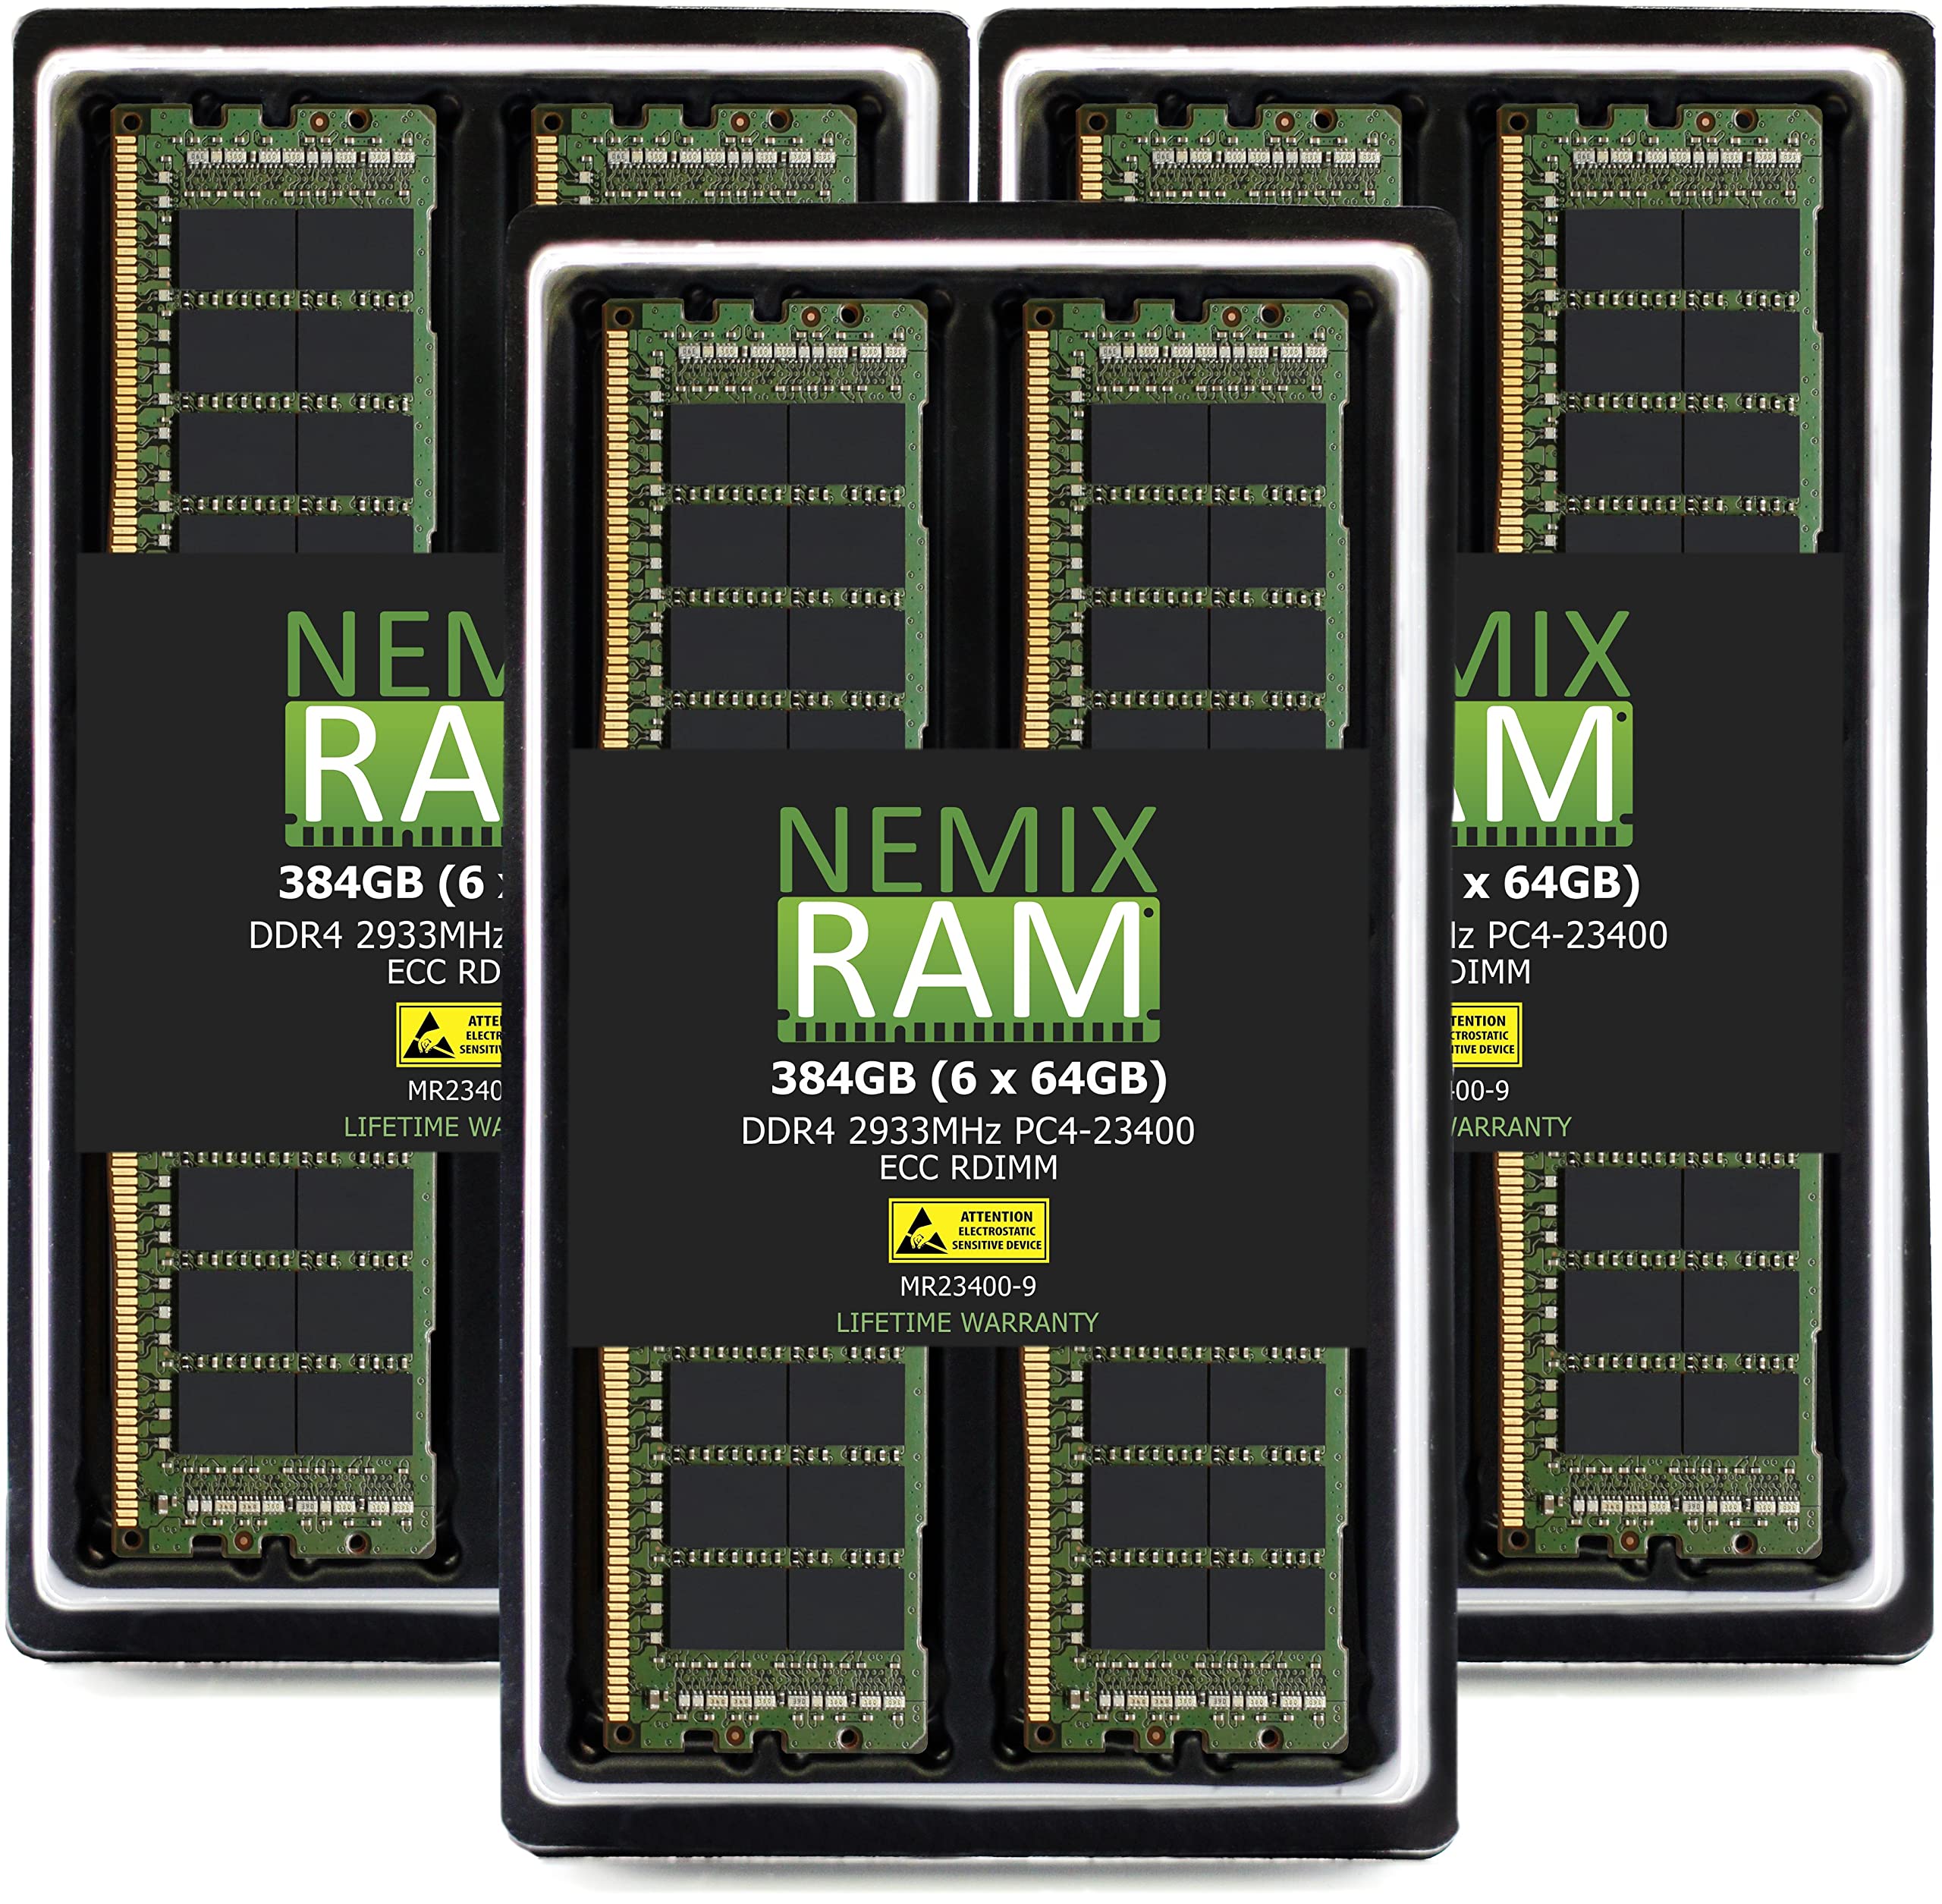 NEMIX RAM 384GB 6X64GB DDR4-2933 PC4-23400 ECC RDIMM レジスタードサーバーメモリアップグレード Dell EMC